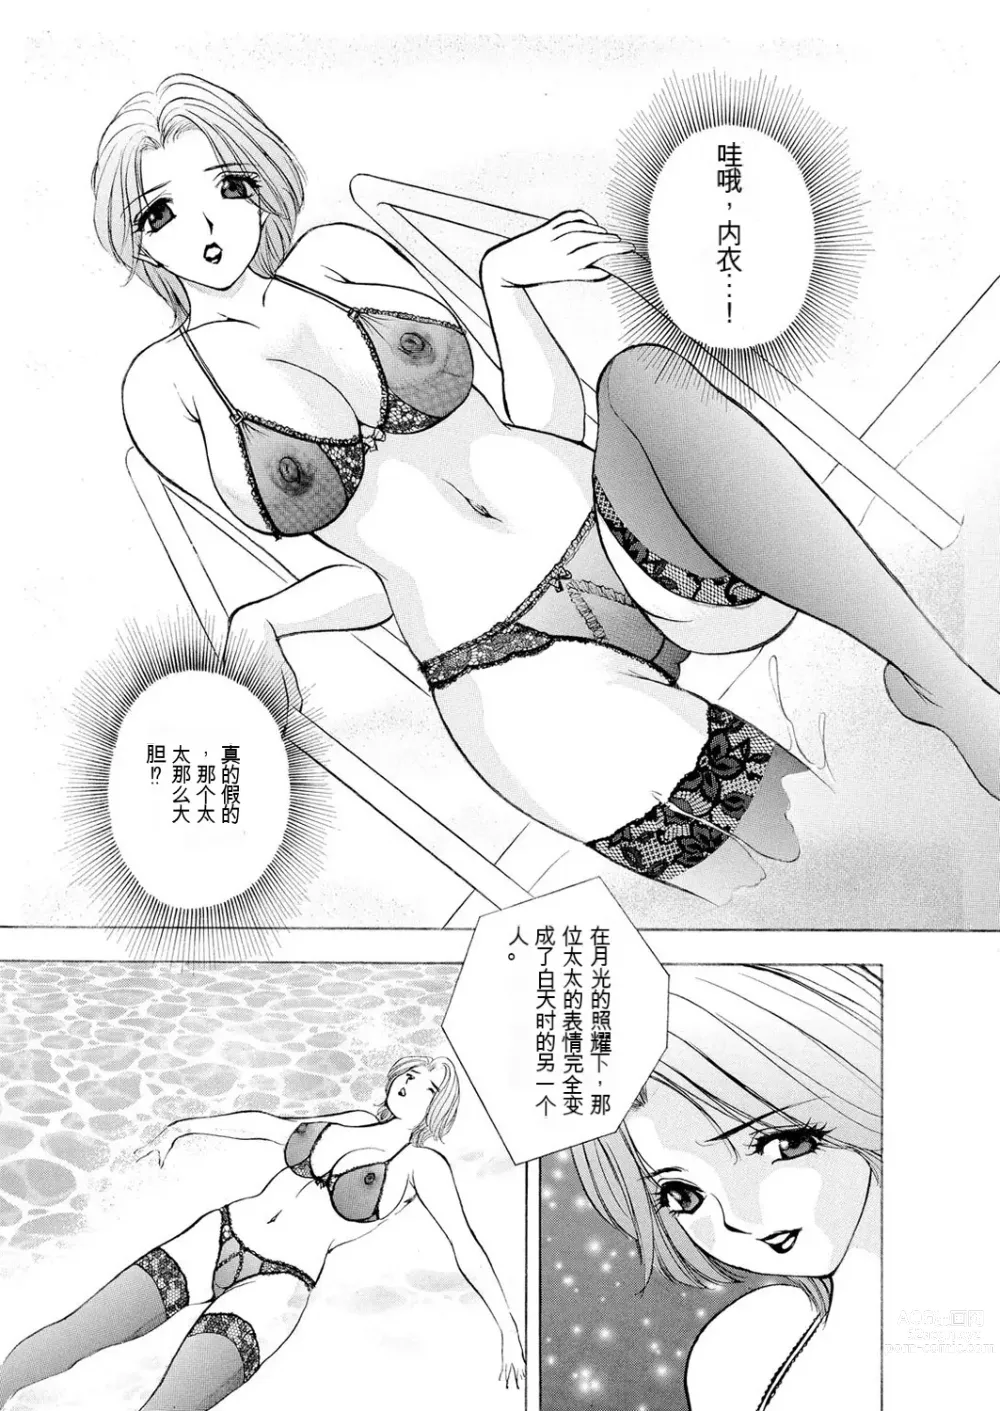 Page 7 of manga Netorare